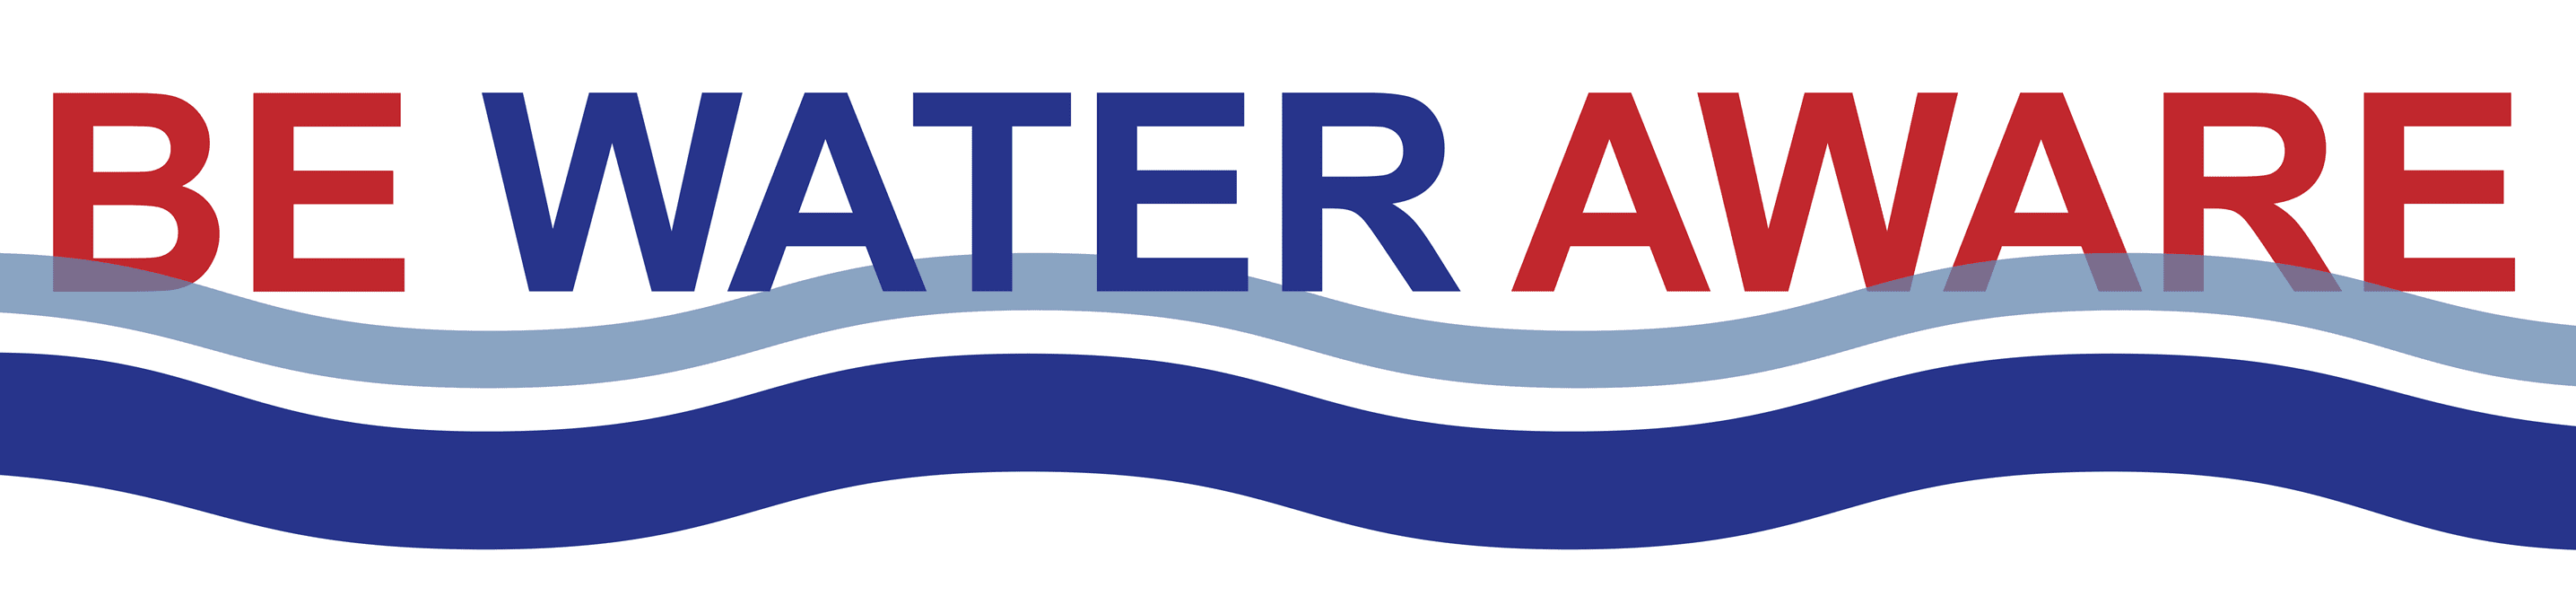 Be Water Aware logo